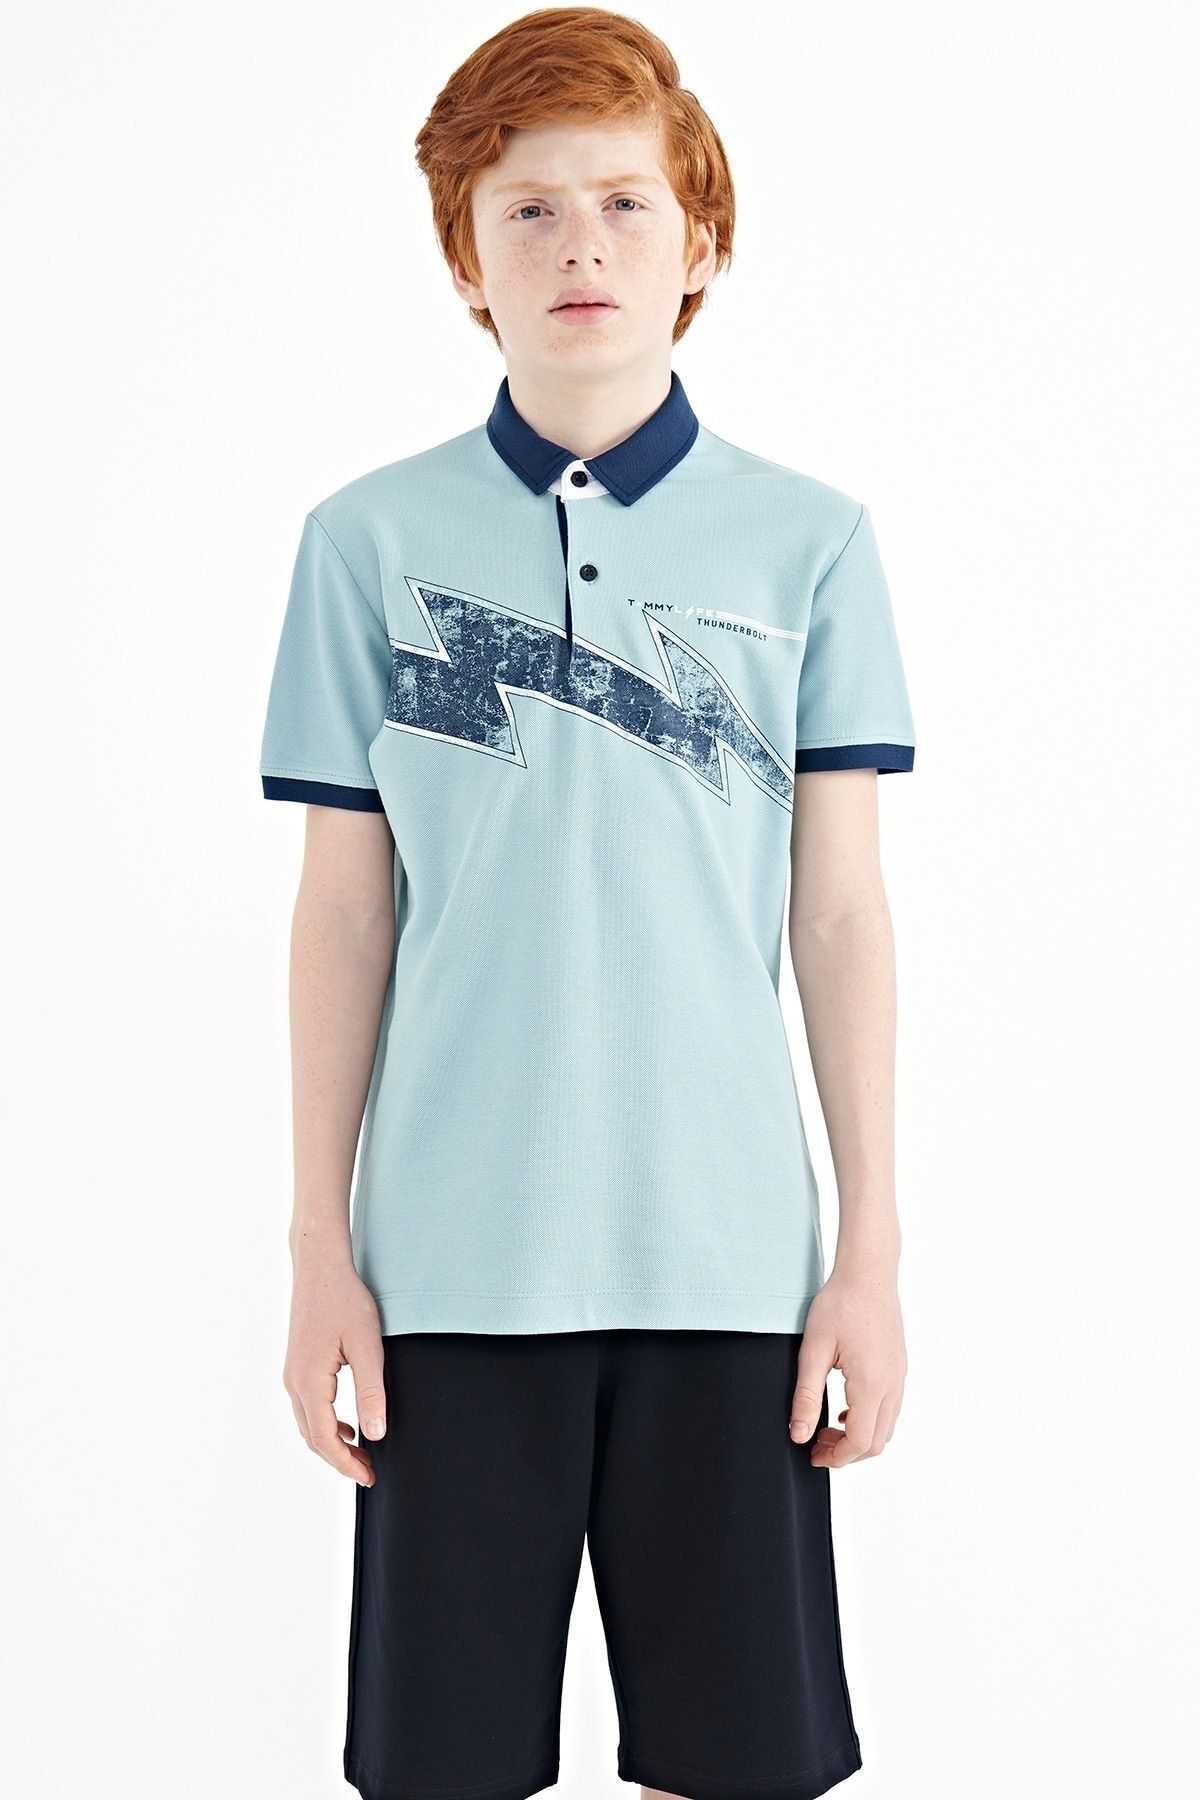 TOMMY LIFE Açık Mavi Baskı Detaylı Standart Kalıp Polo Yaka Erkek Çocuk T-shirt - 11154